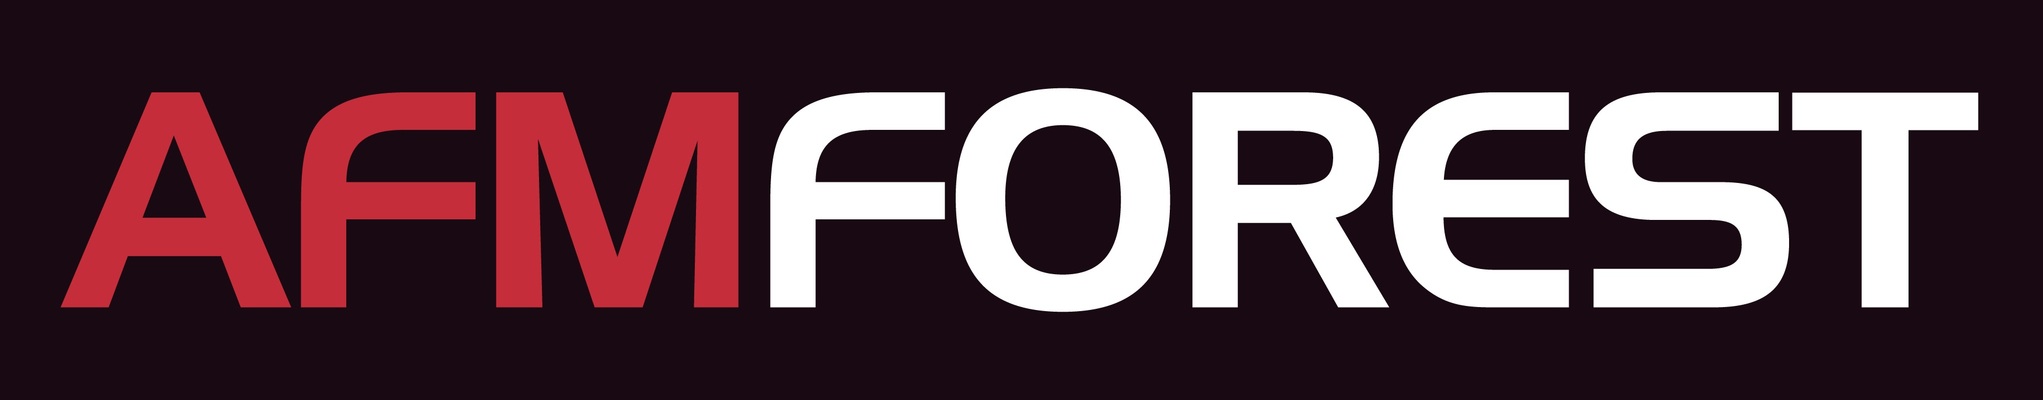 Profile image for AFM-forest Ltd